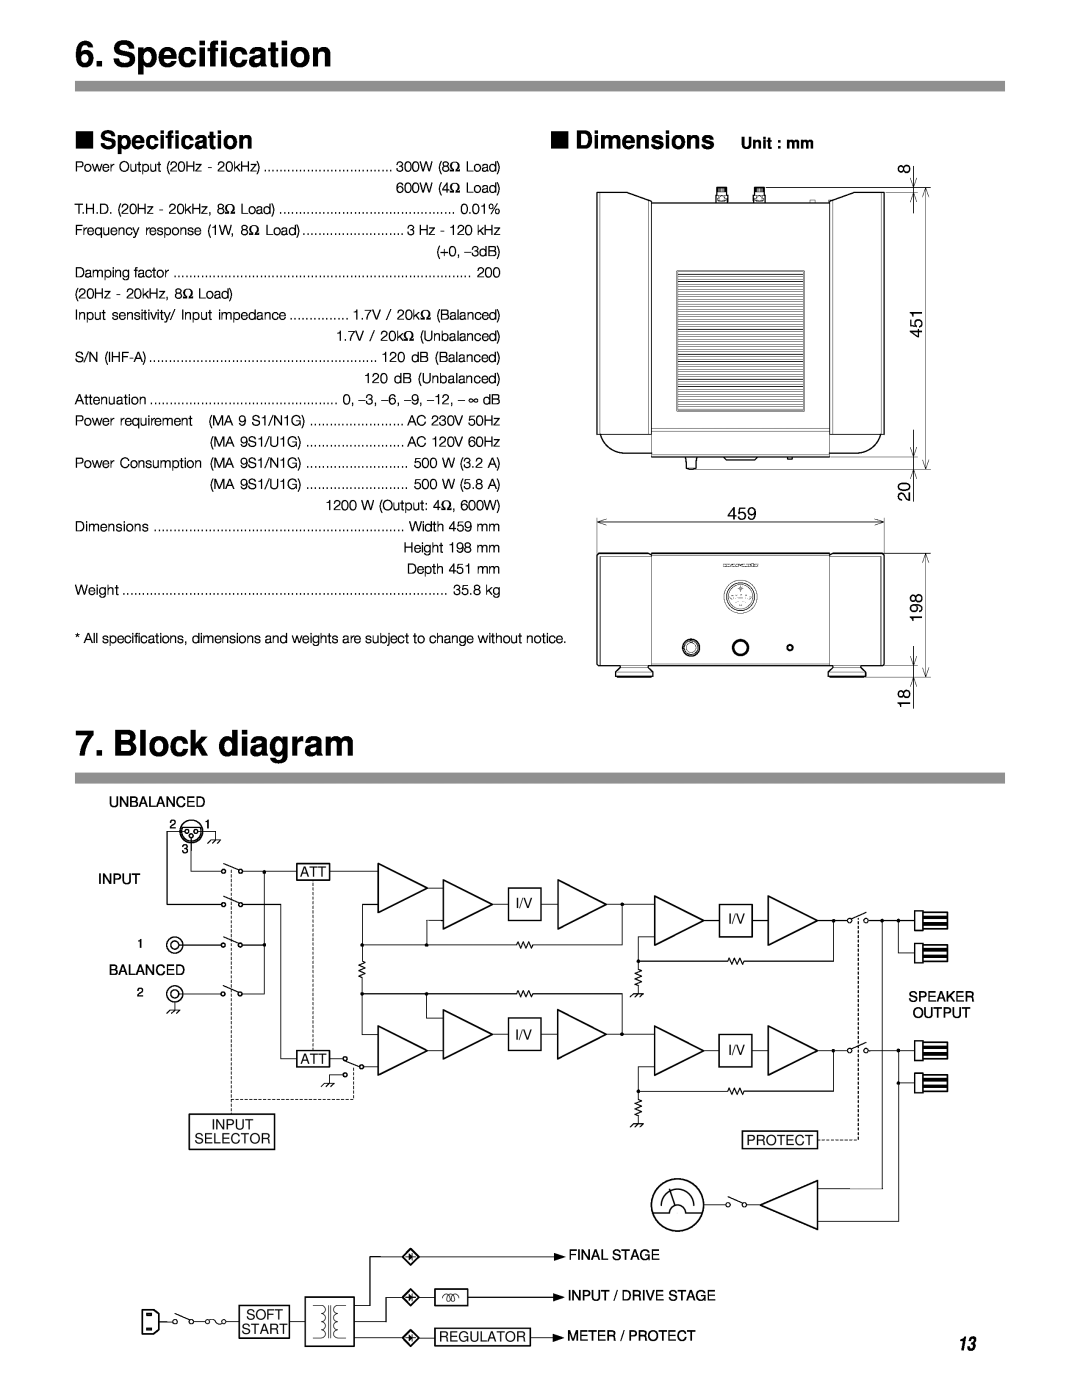 Marantz MA-9S1 manual Specification, Block diagram, Dimensions Unit mm 